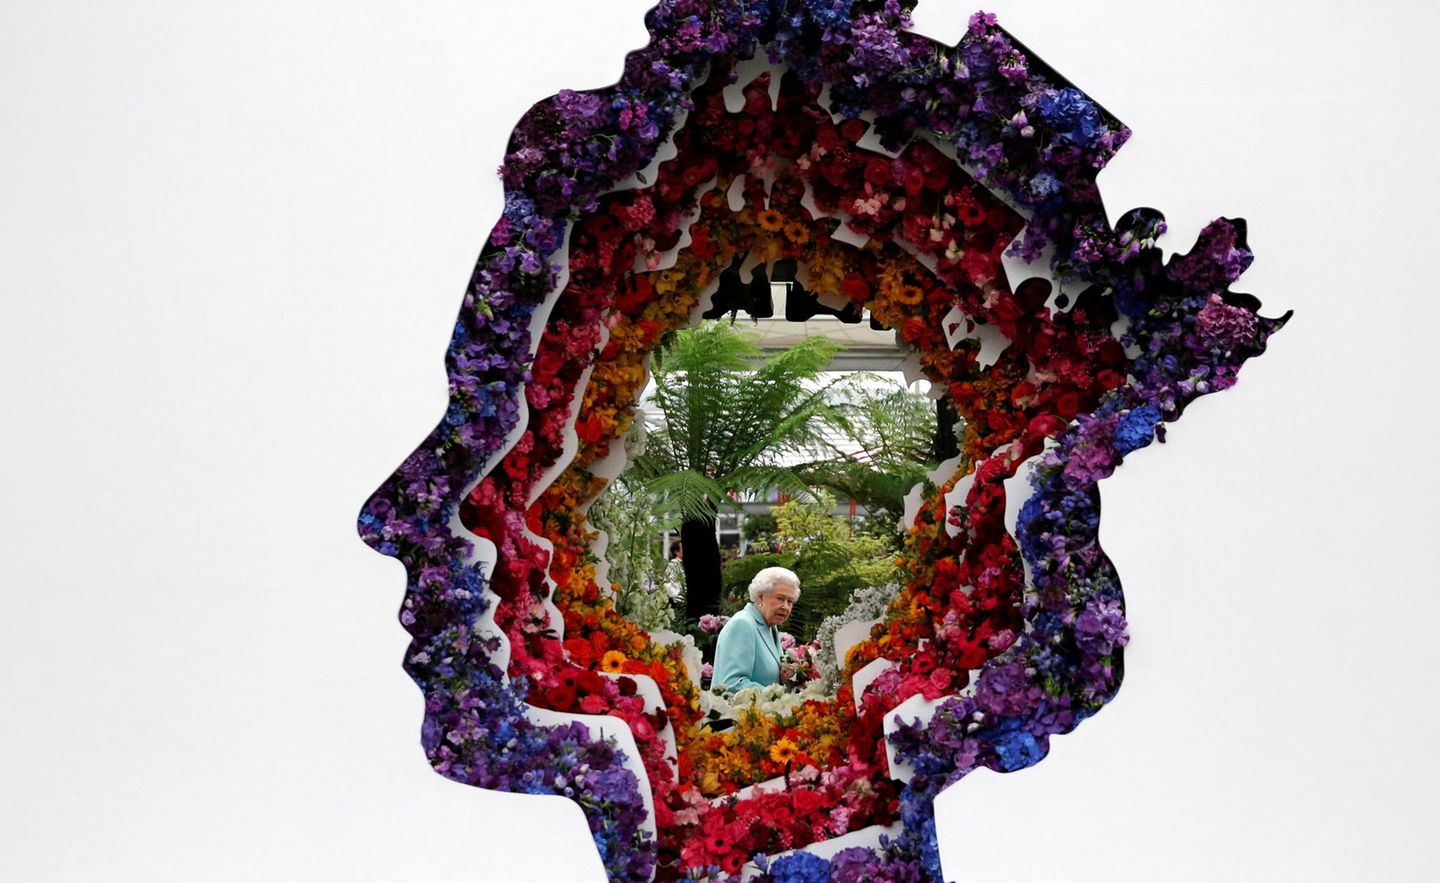 Die "Chelsea Flower Show" ist eine jährliche Gartenschau in London, die von der Royal Horticultural Society (RHS) veranstaltet wird. Queen Elizabeth darf sich in diesem Jahr über eine Blumeninstallation mit ihrem Profil freuen.